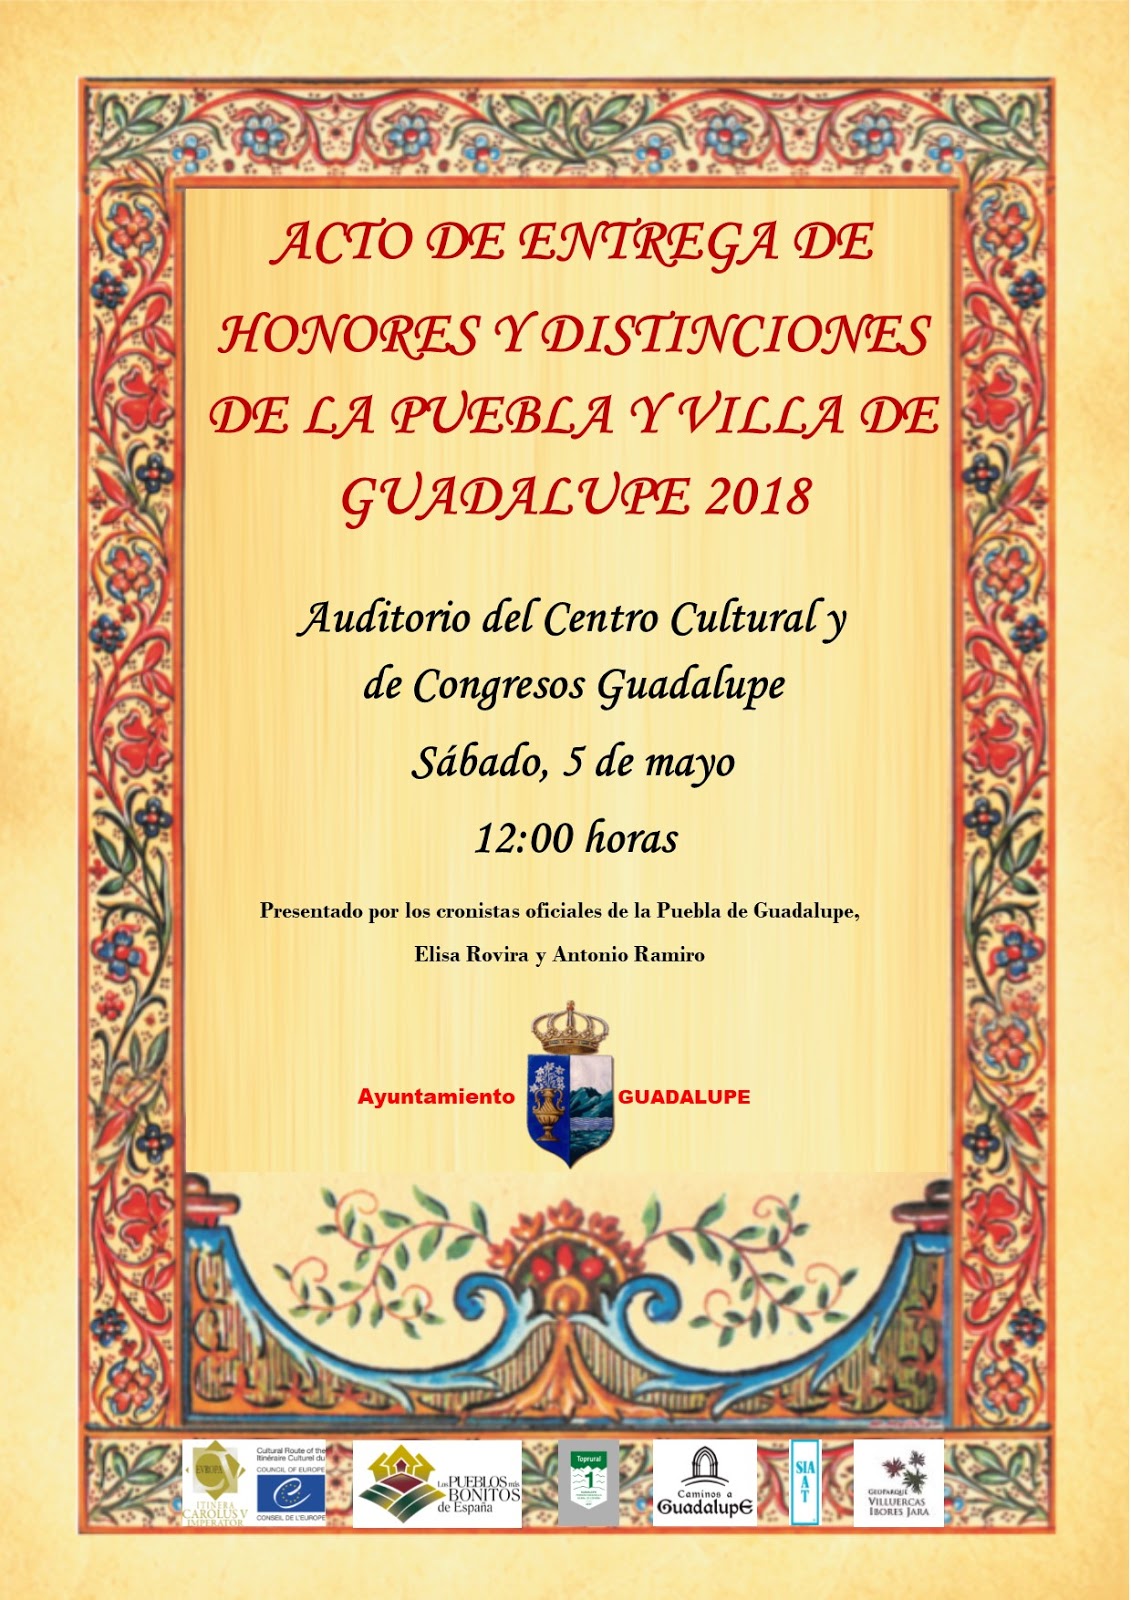 Acto de entrega de honores y distinciones 2018 - Guadalupe